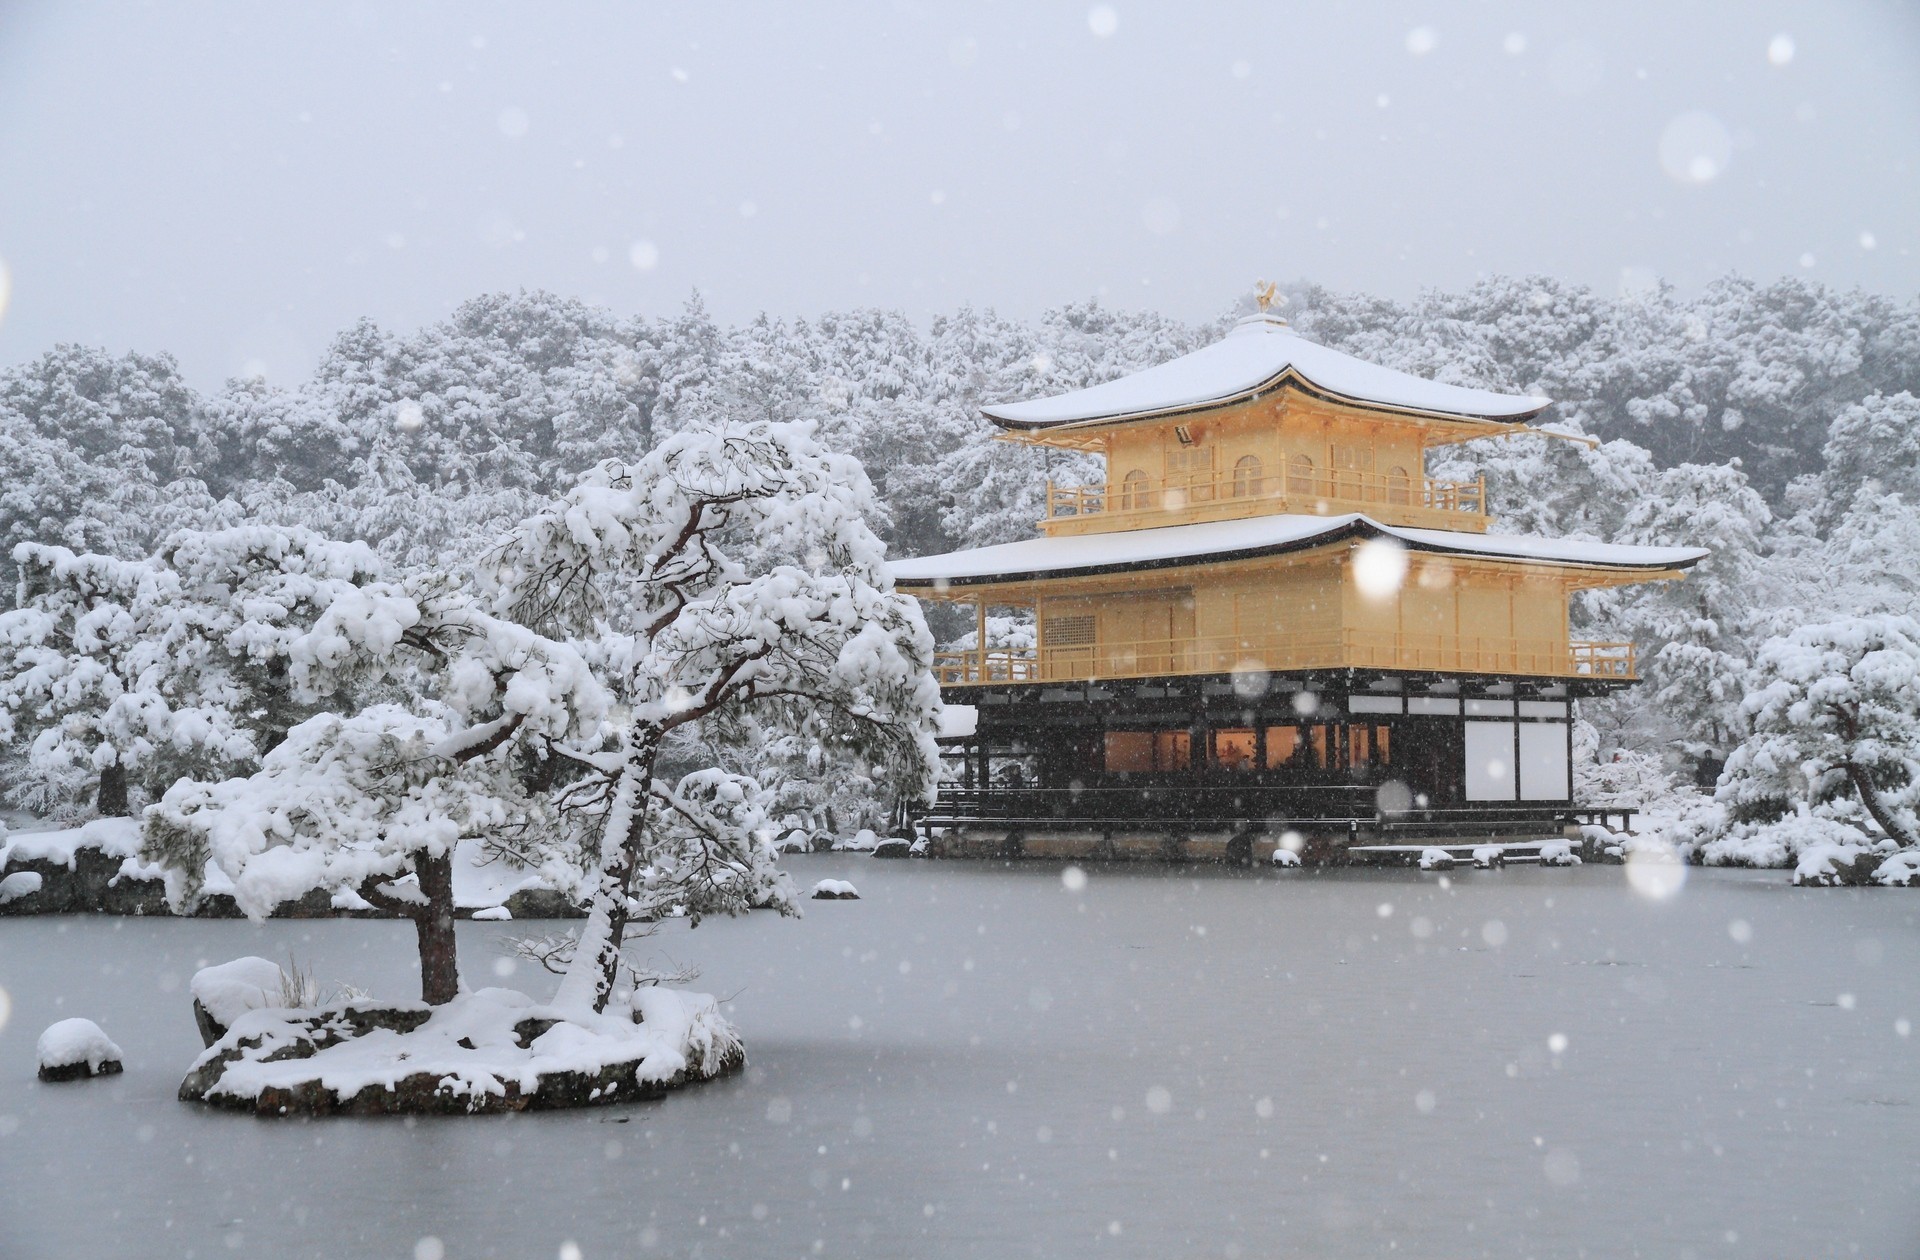 337896 descargar imagen templos, religioso, kinkaku ji, japón, kioto, nevada, el templo del pabellón dorado: fondos de pantalla y protectores de pantalla gratis